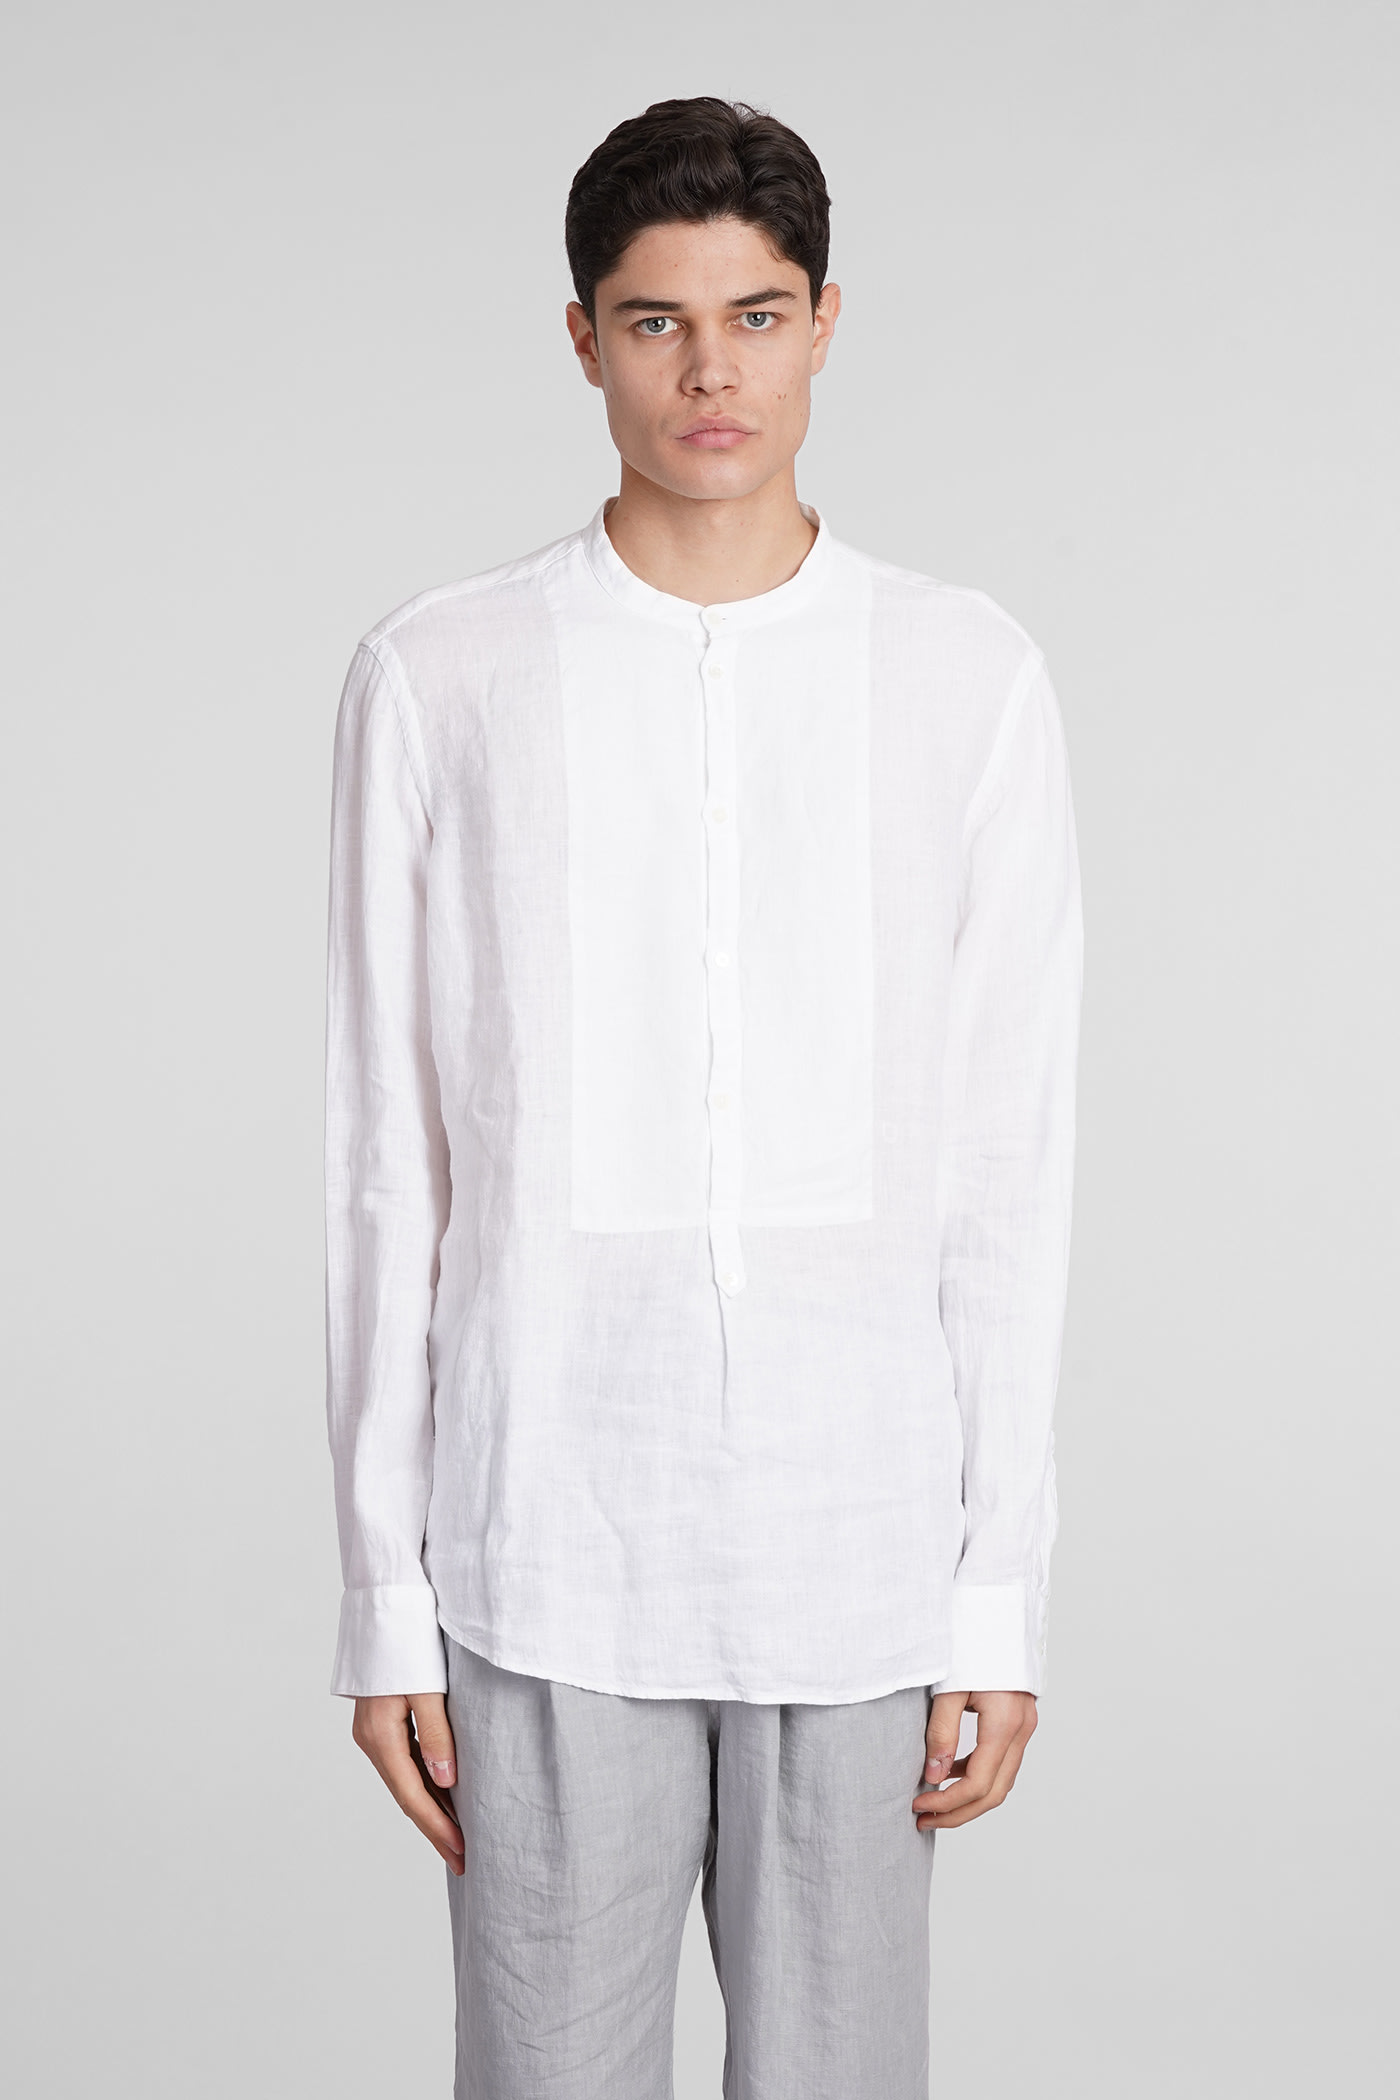 Kos Shirt In White Linen